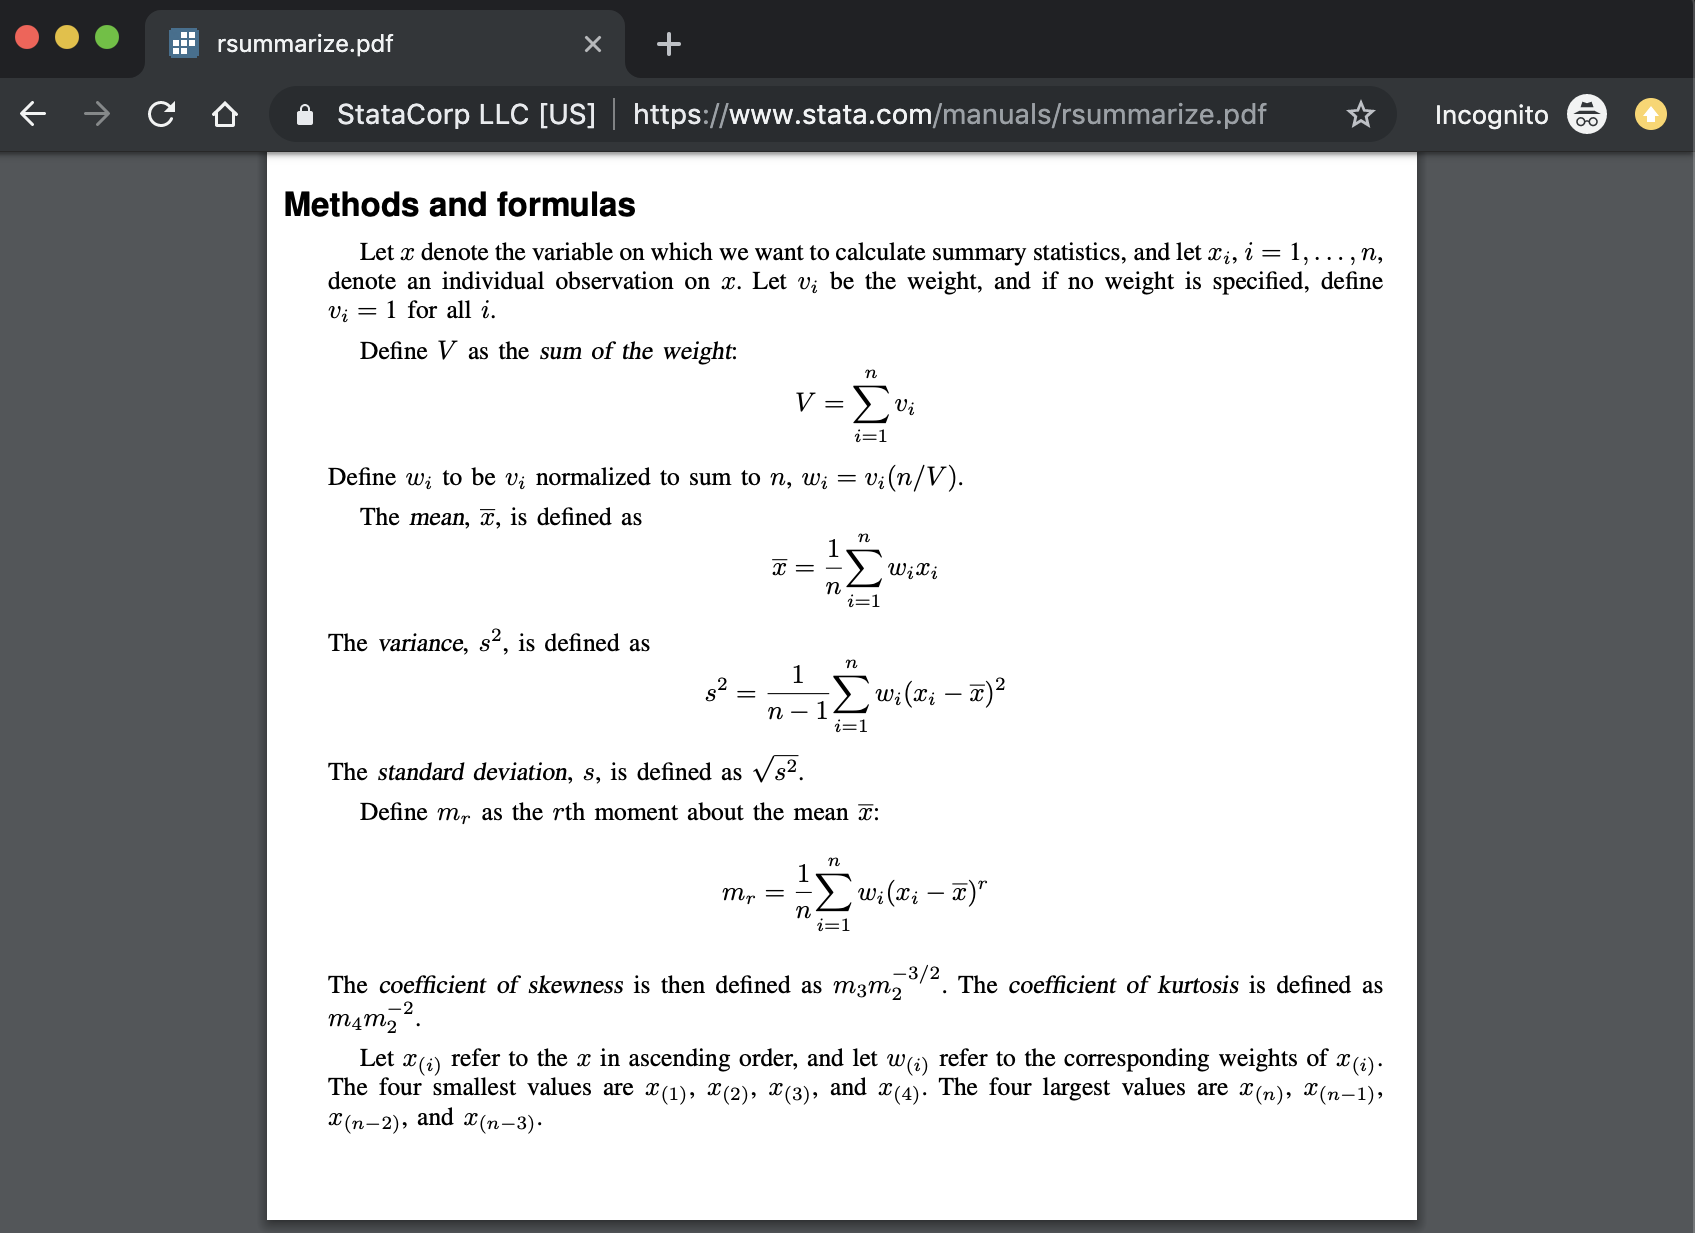 Detailed formulas